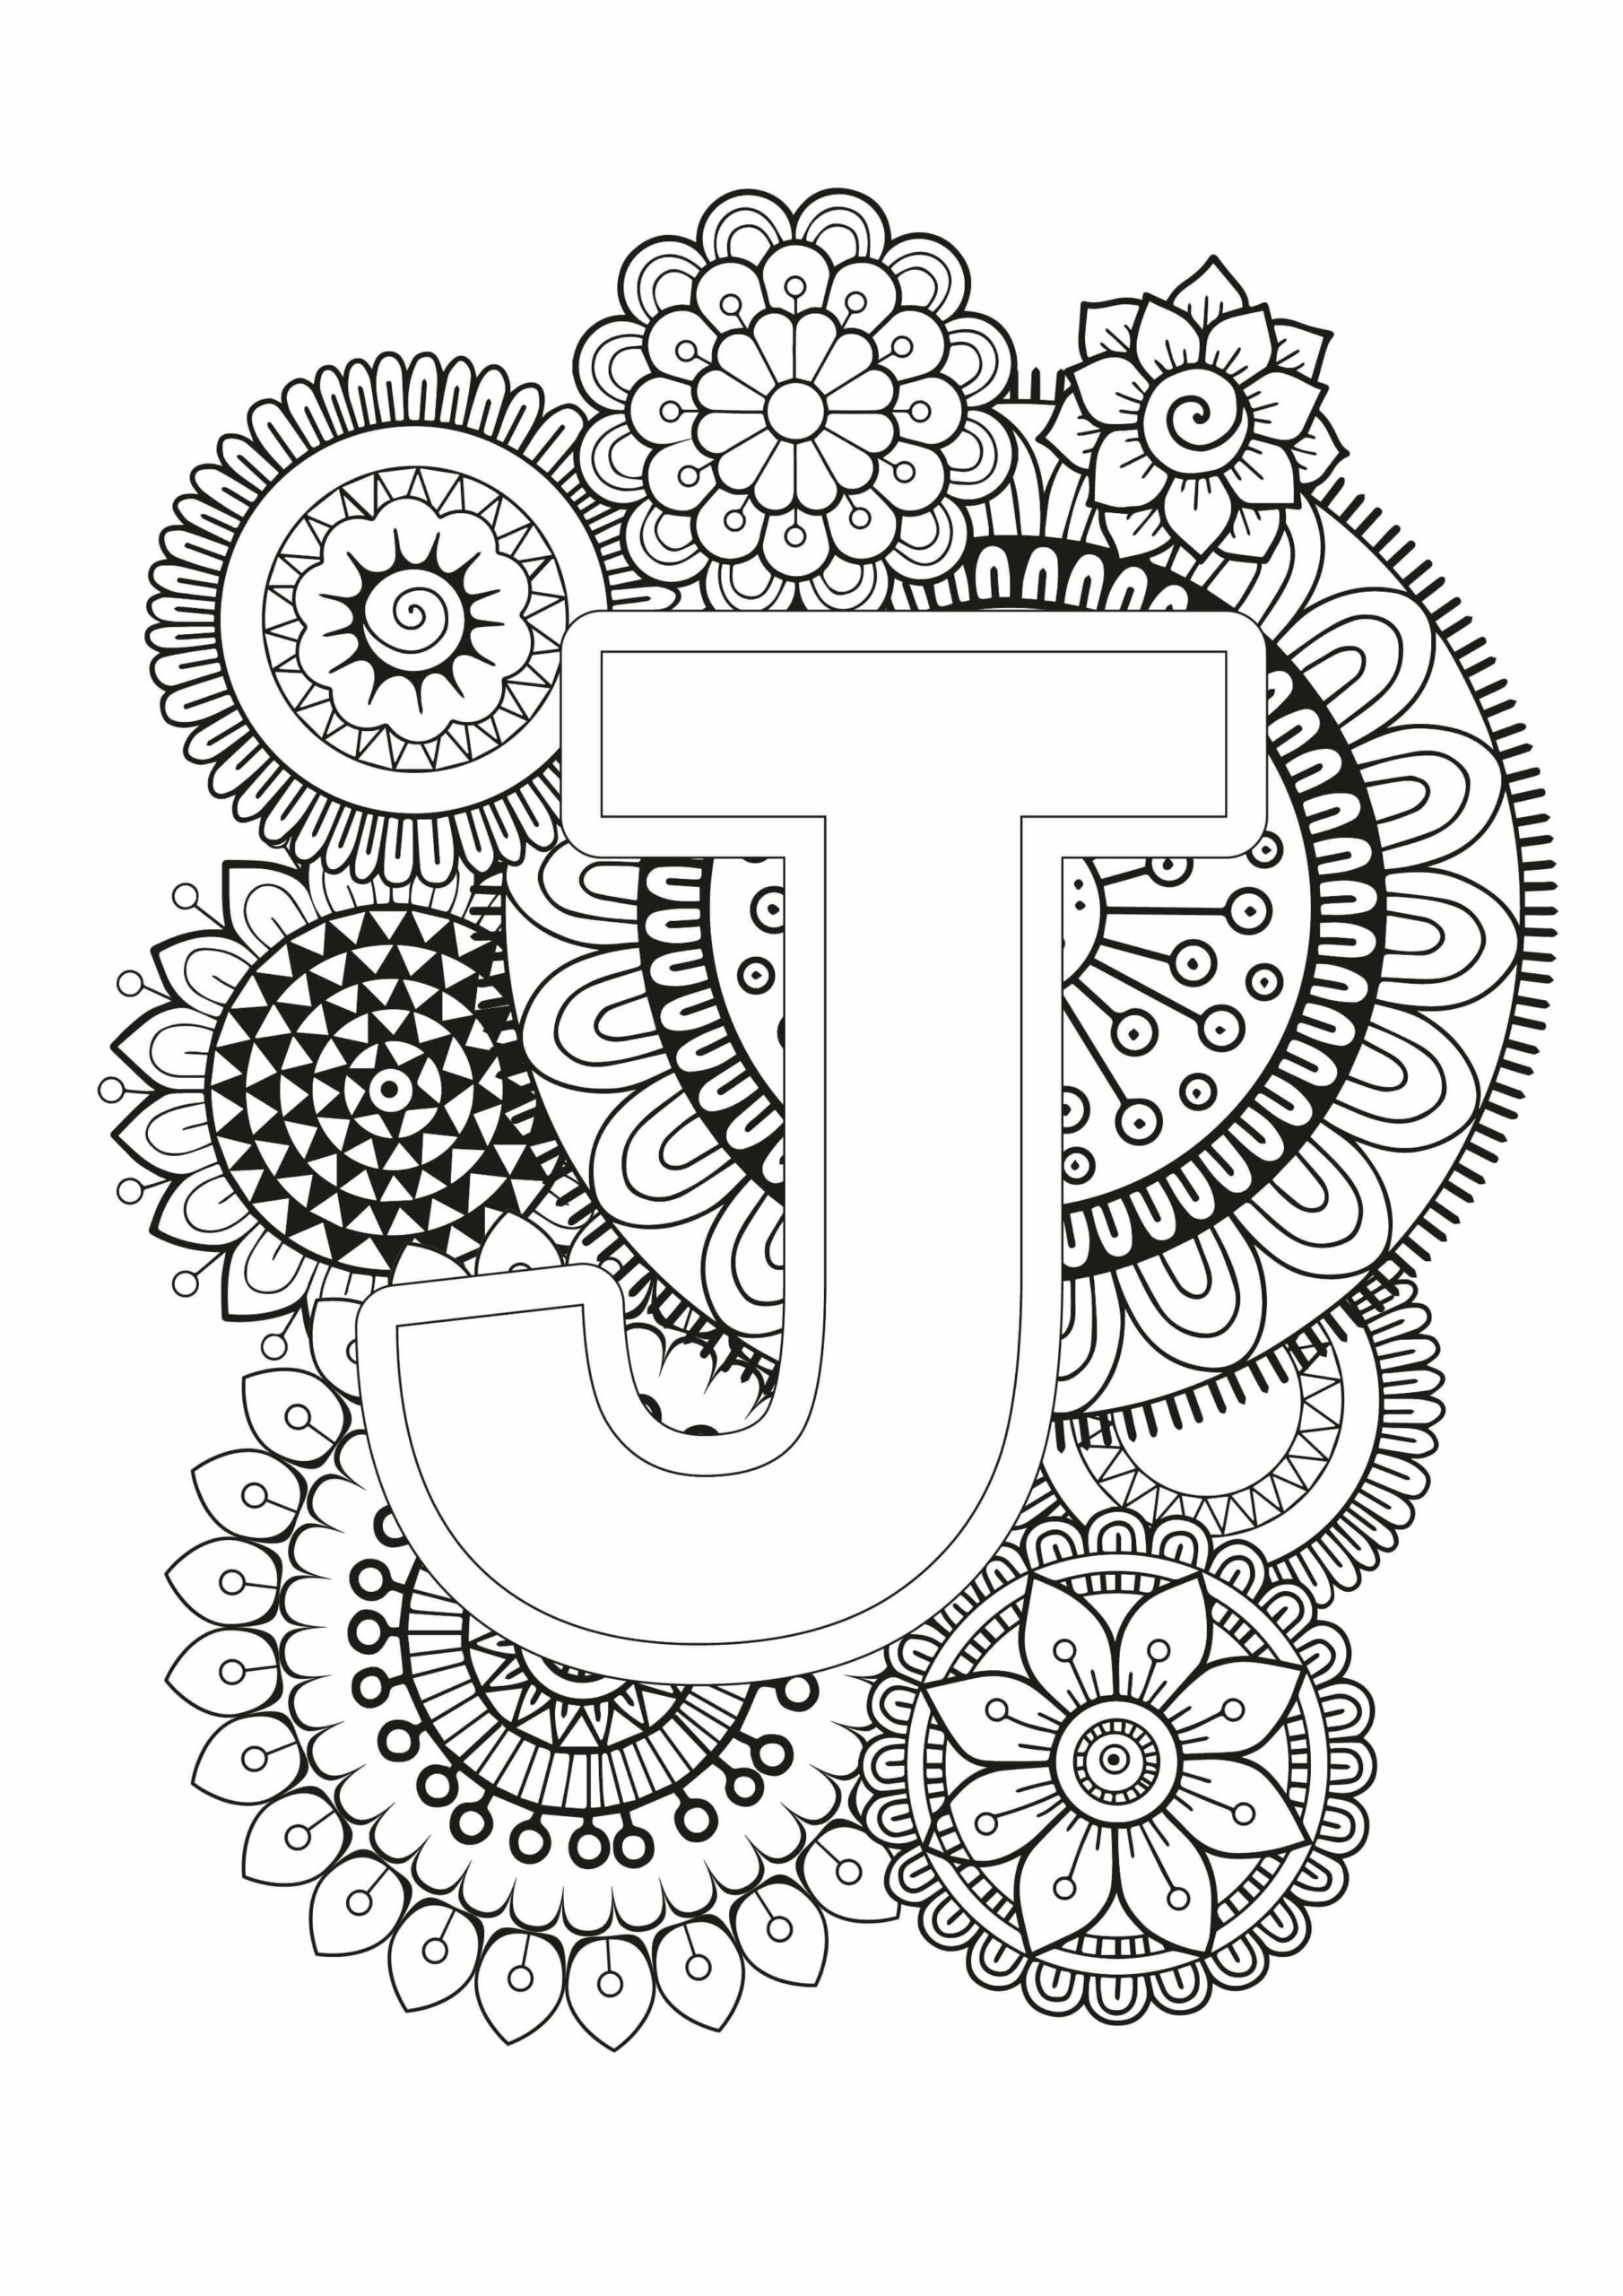 Mandala Letter J Coloring Page - Sheet 2 Mandalas